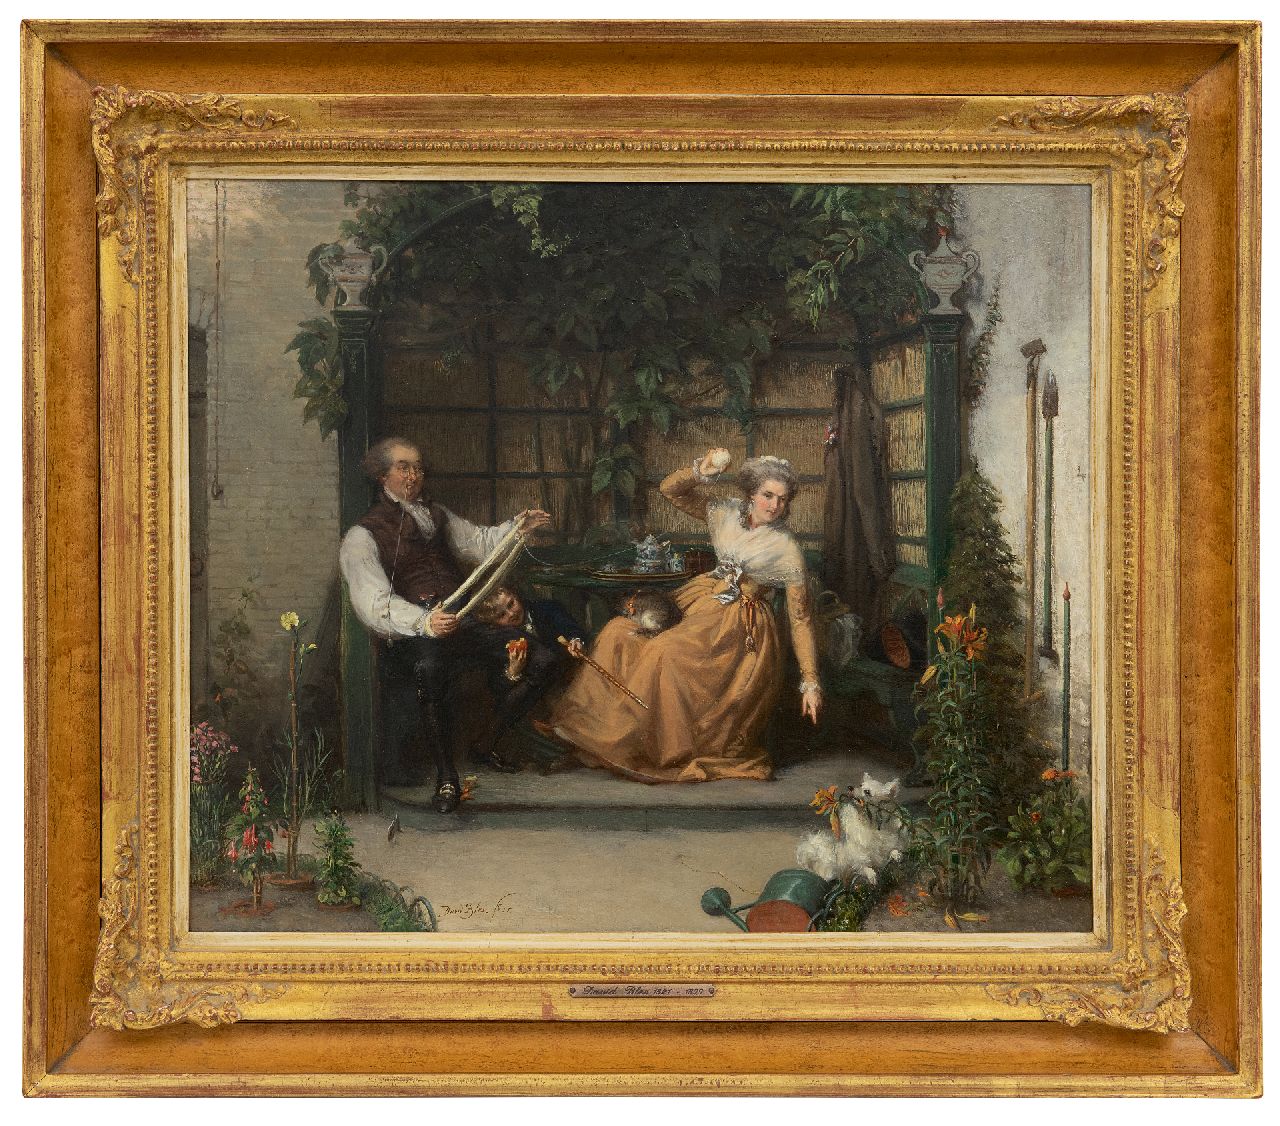 Bles D.J.  | David Joseph Bles | Schilderijen te koop aangeboden | Het keeshondje; een Oranjegezinde familie in een tuinprieel, olieverf op paneel 37,0 x 43,9 cm, gesigneerd linksonder en gedateerd '55